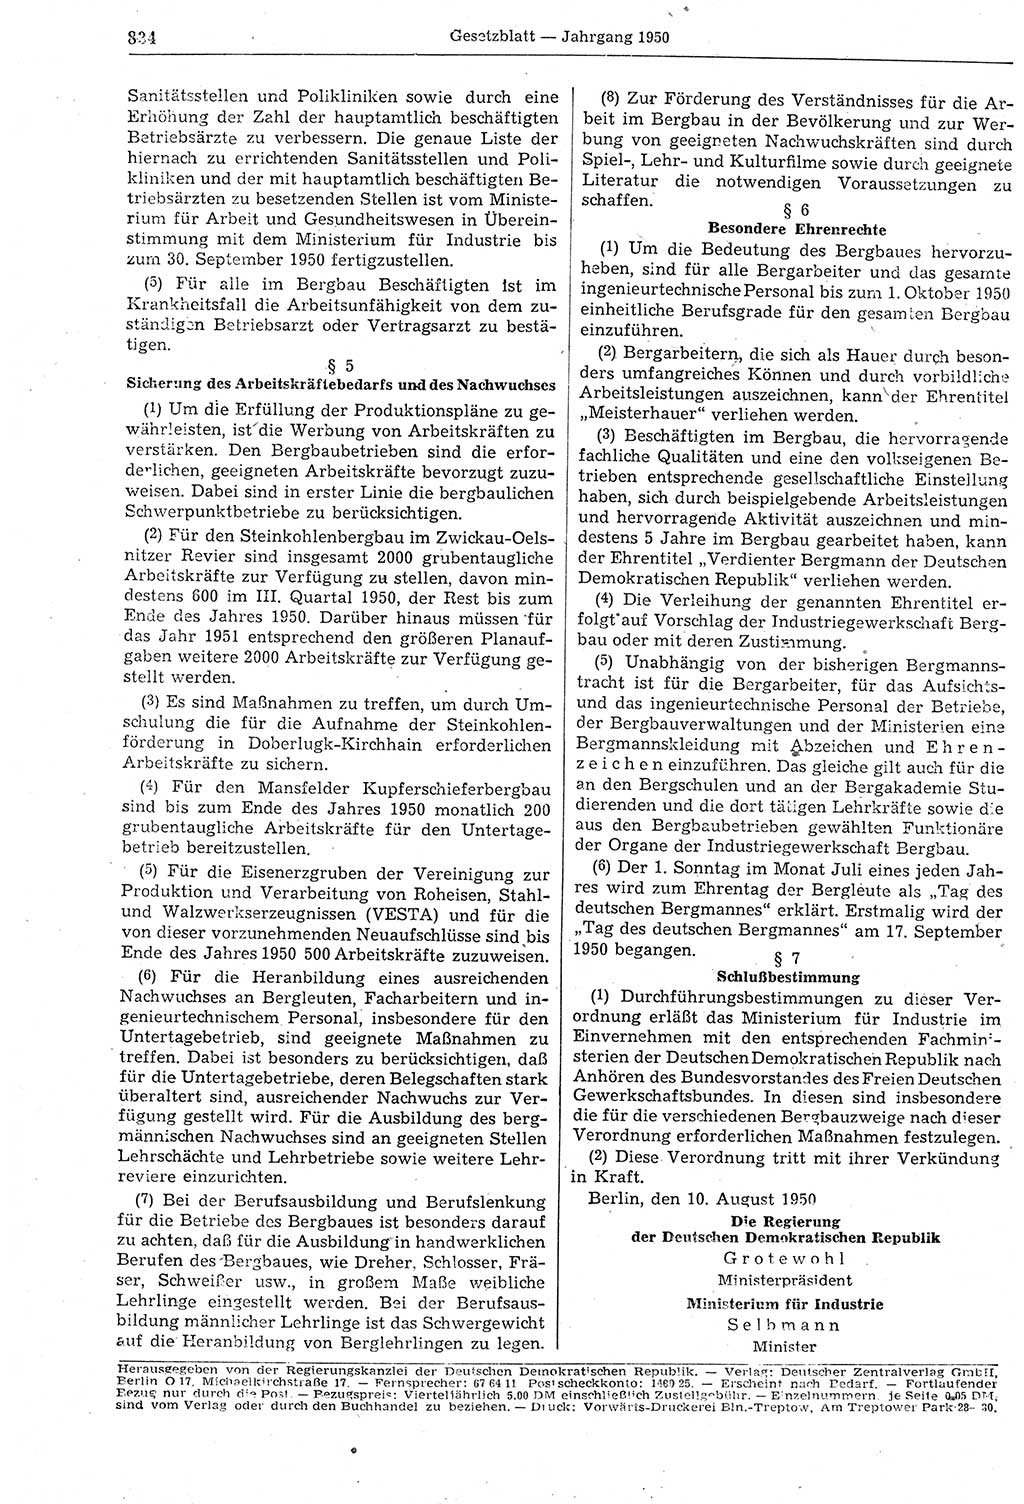 Gesetzblatt (GBl.) der Deutschen Demokratischen Republik (DDR) 1950, Seite 834 (GBl. DDR 1950, S. 834)